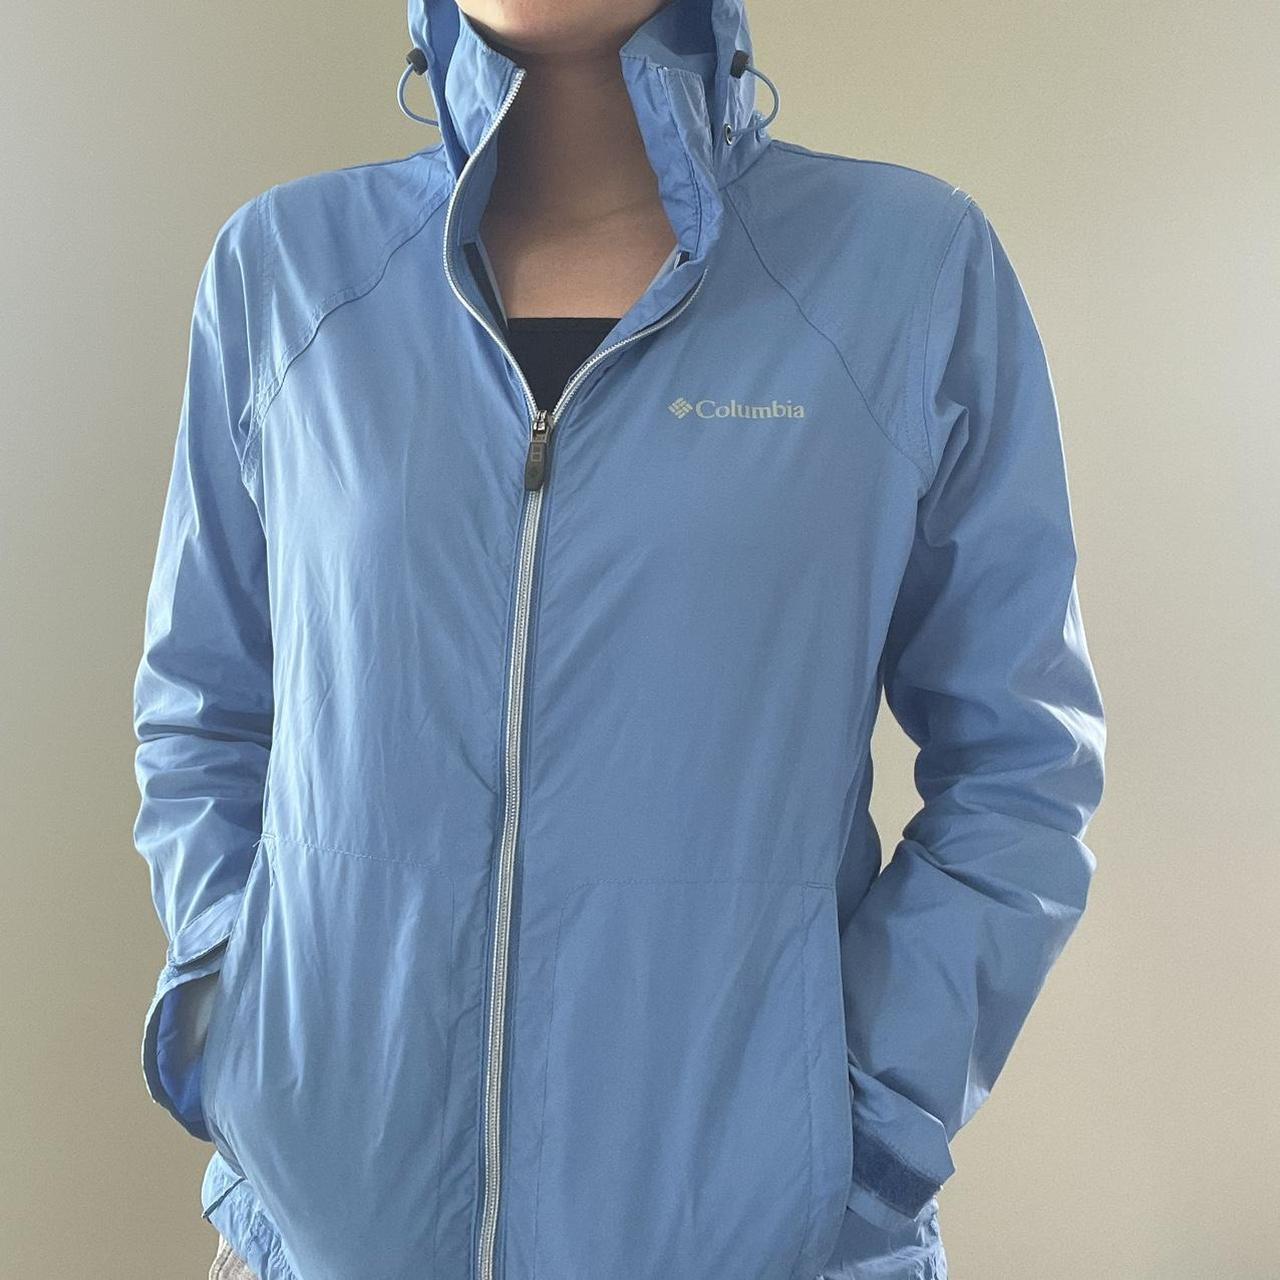 Columbia sportswear rain jacket Blue Size... Depop